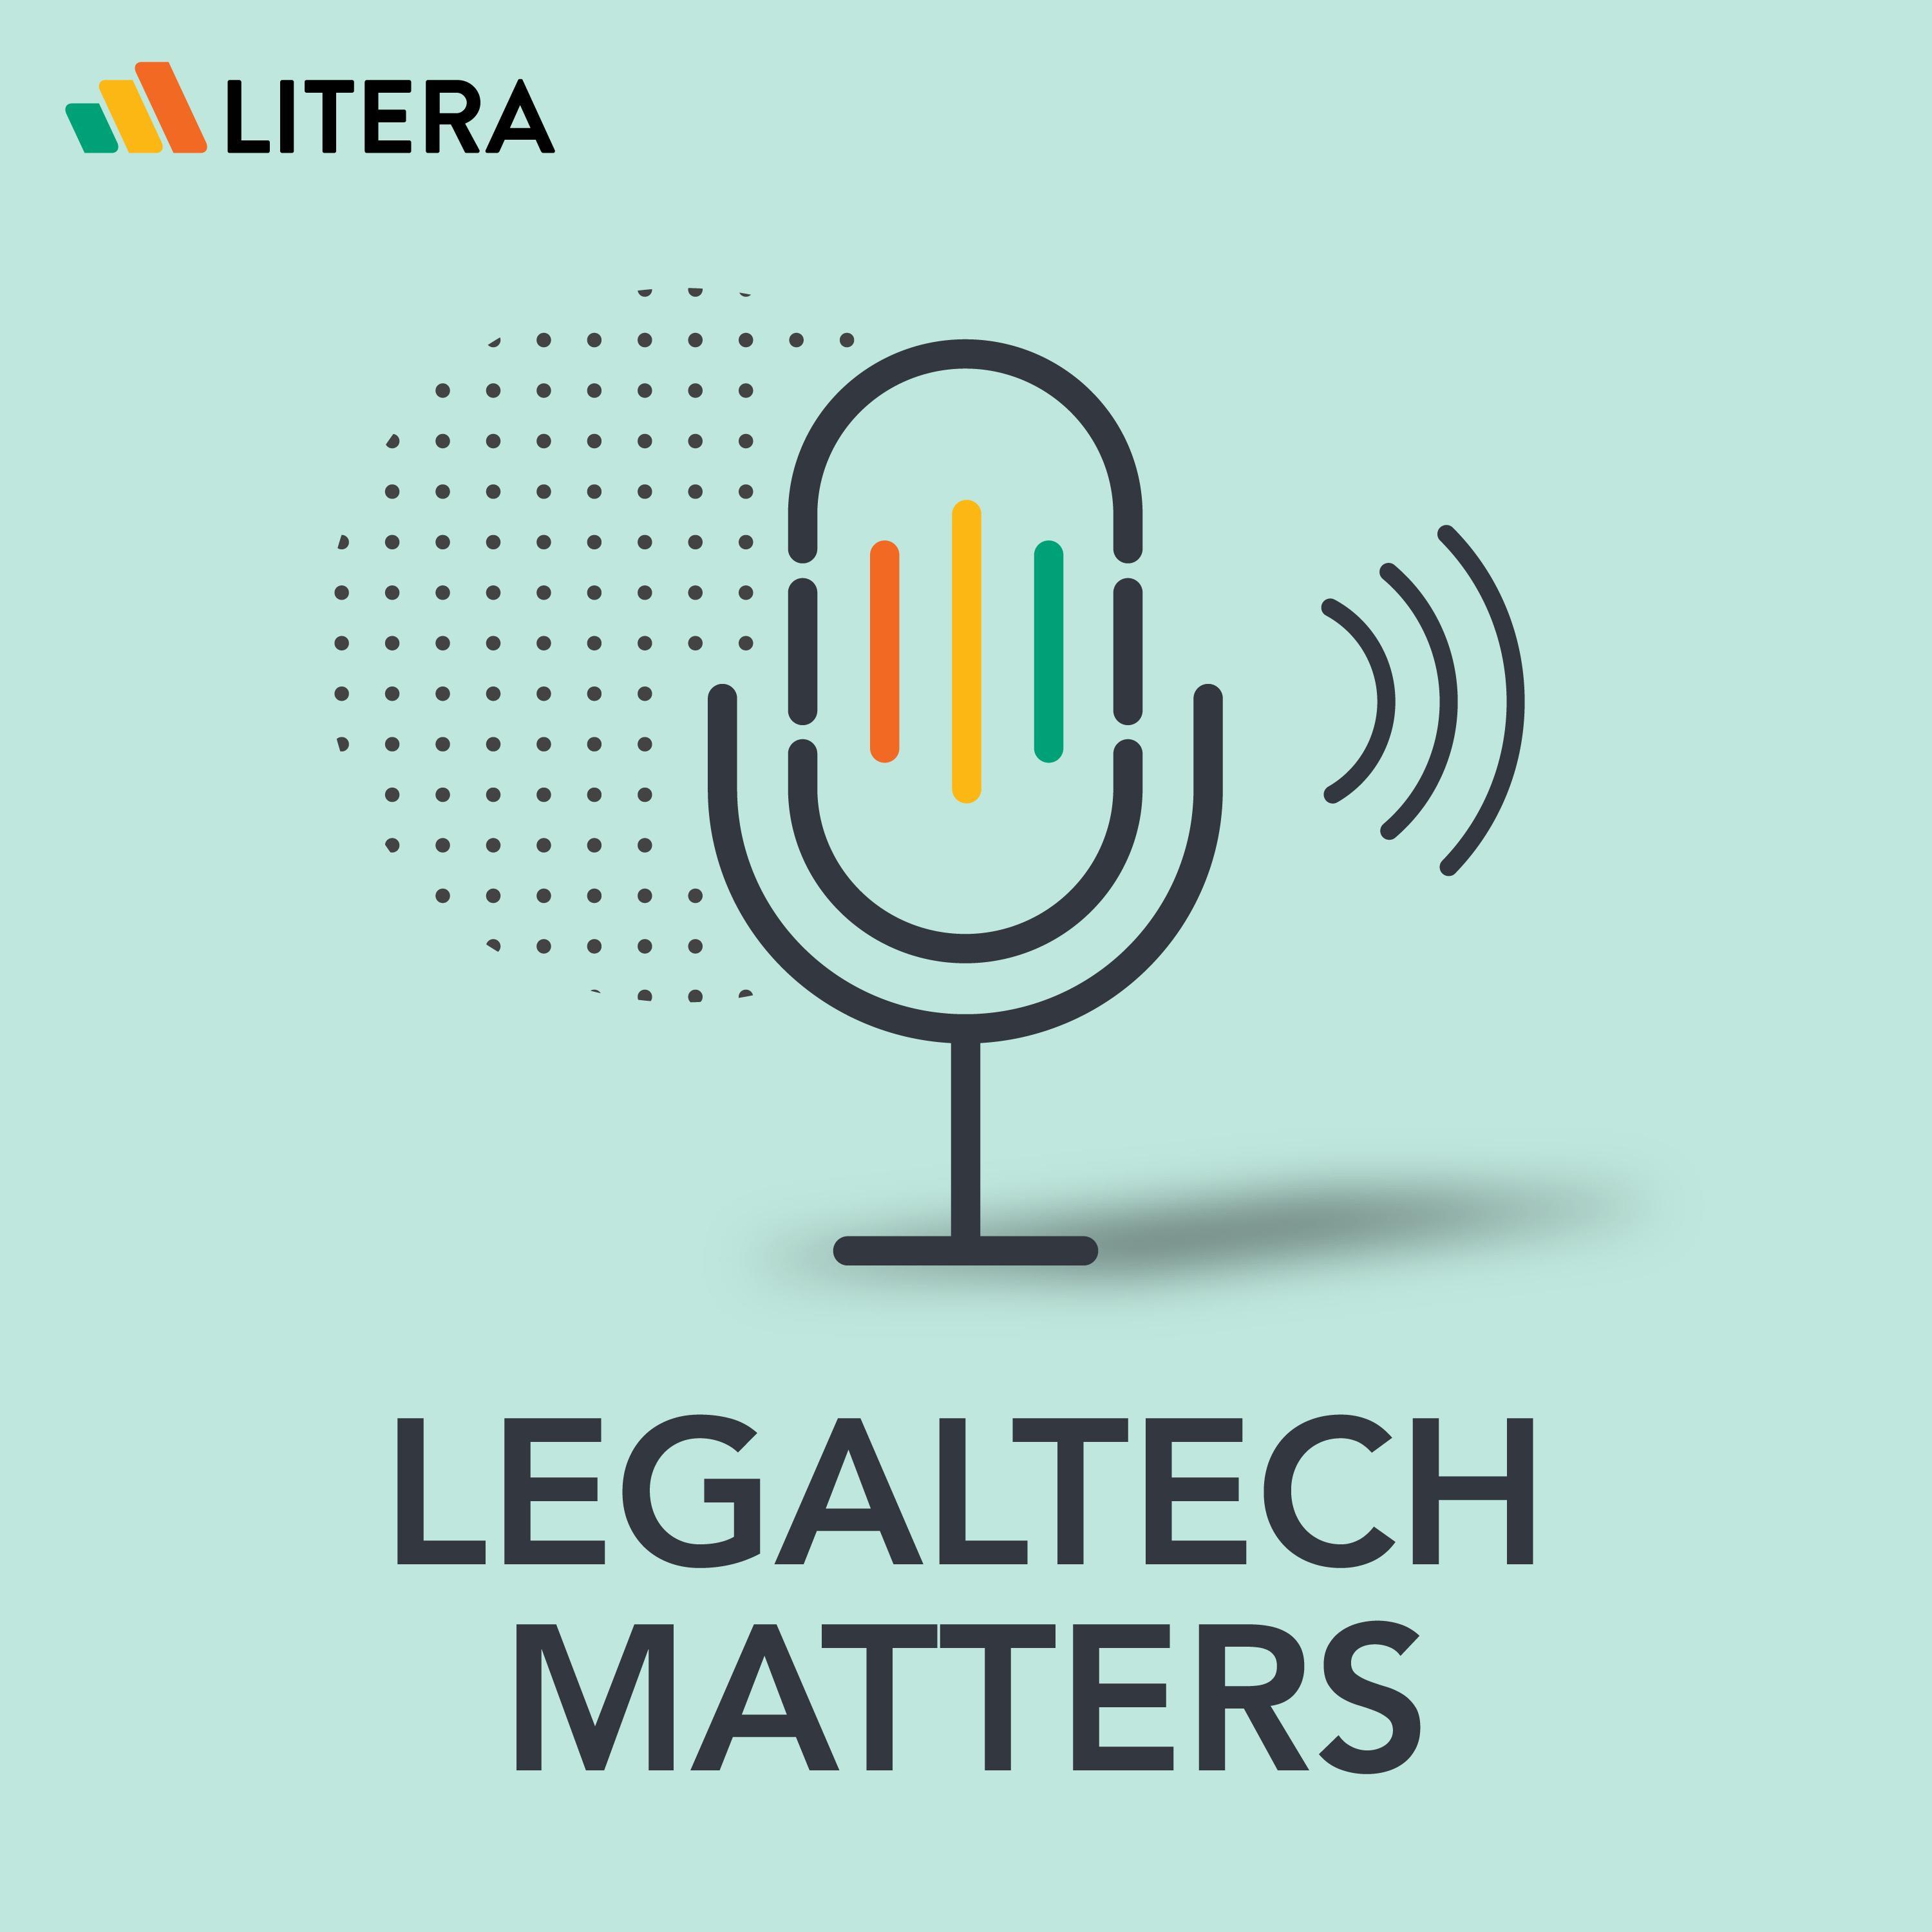 LegalTech Matters